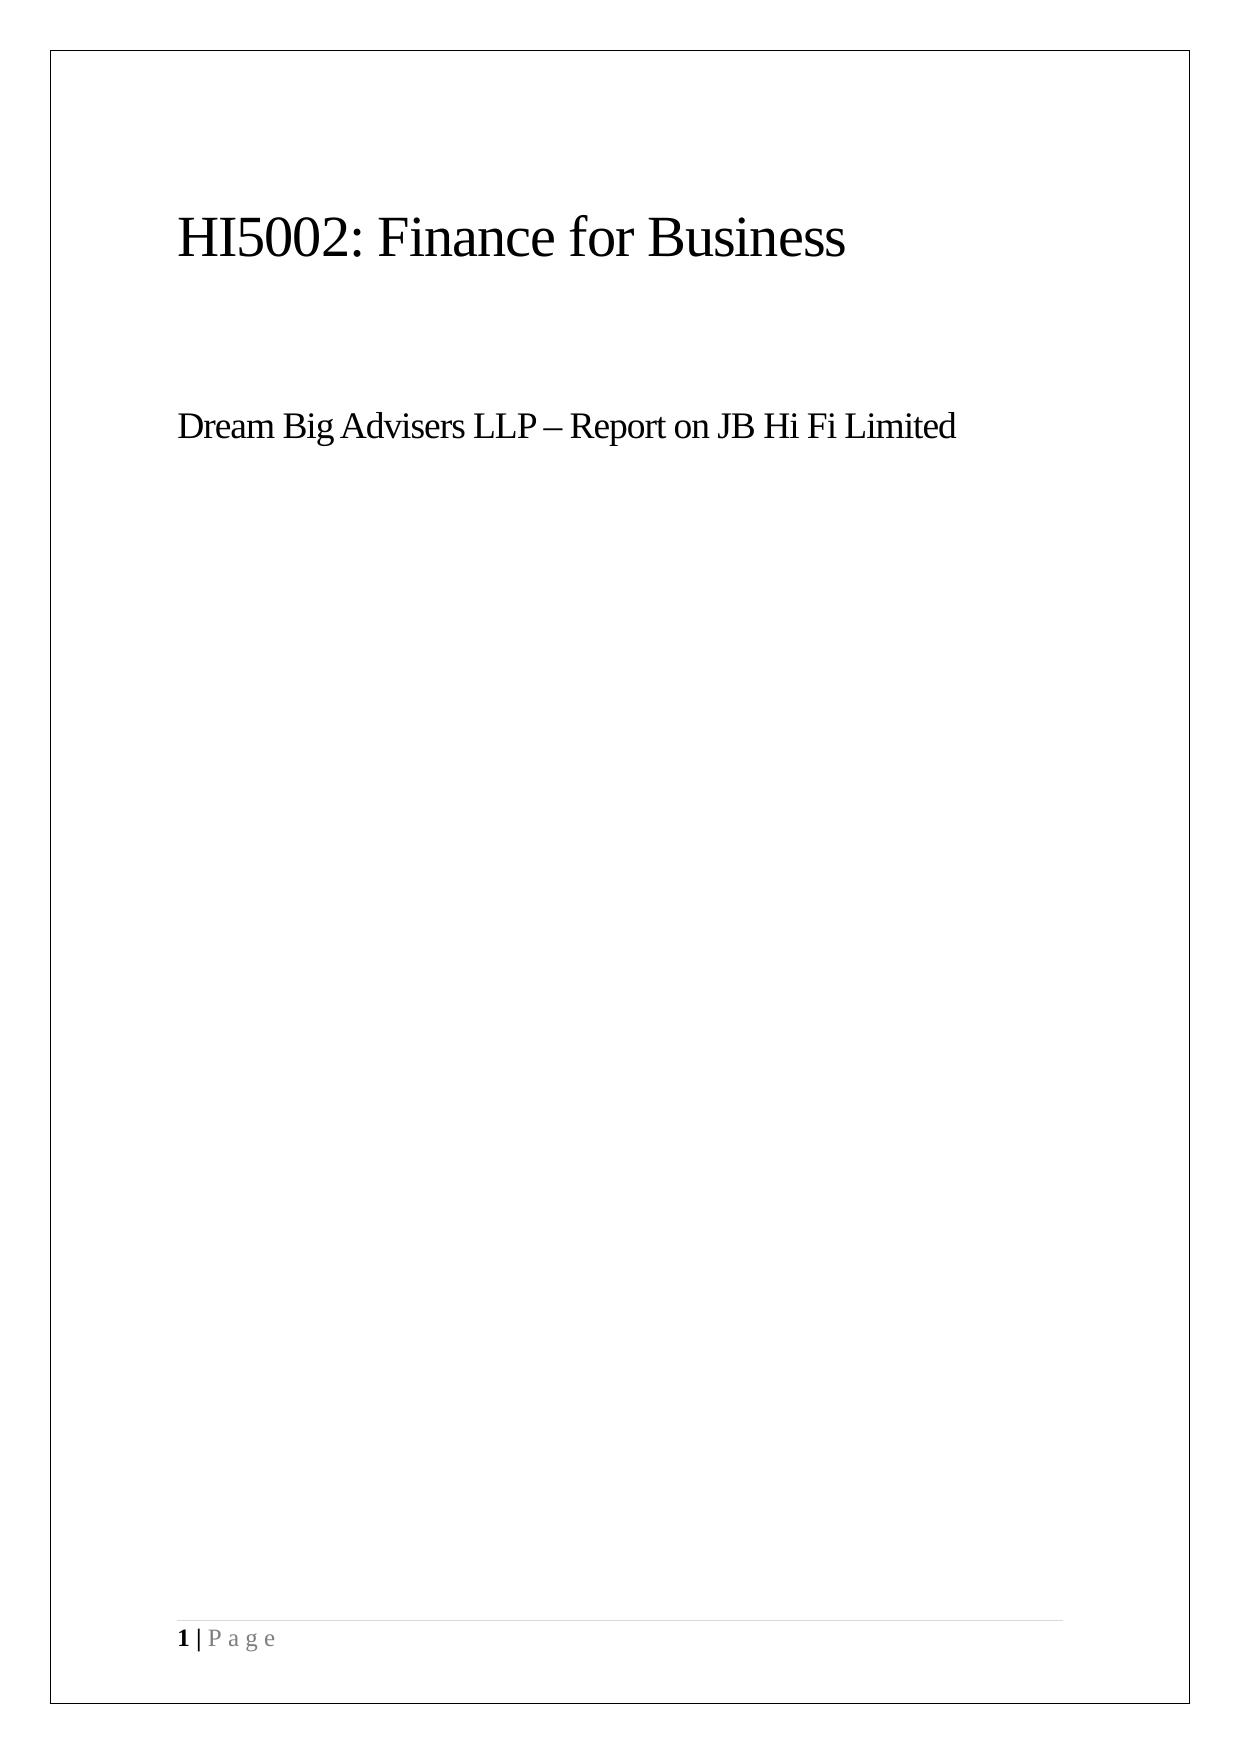 Finance Report on JB Hi Fi Limited_1